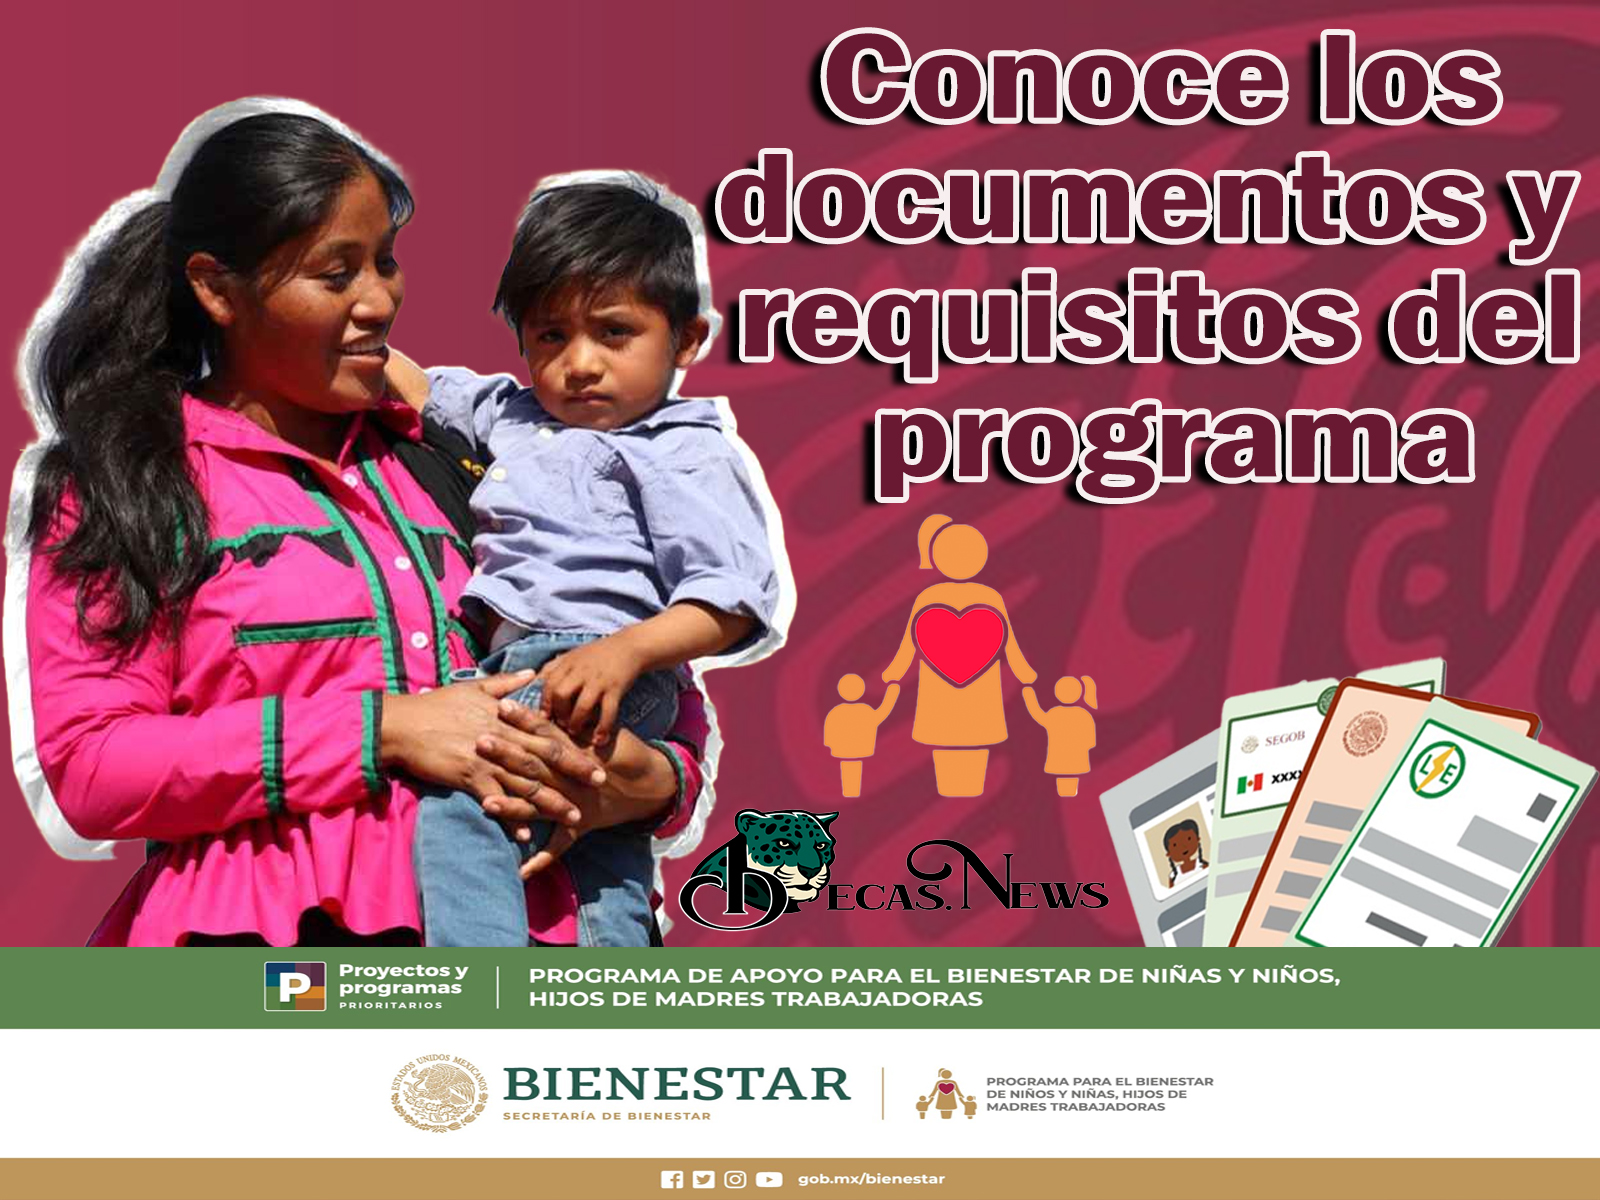 Programa para bienestar de las niñas y niños, hijos de madres trabajadoras: Conoce los documentos y requisitos del programa